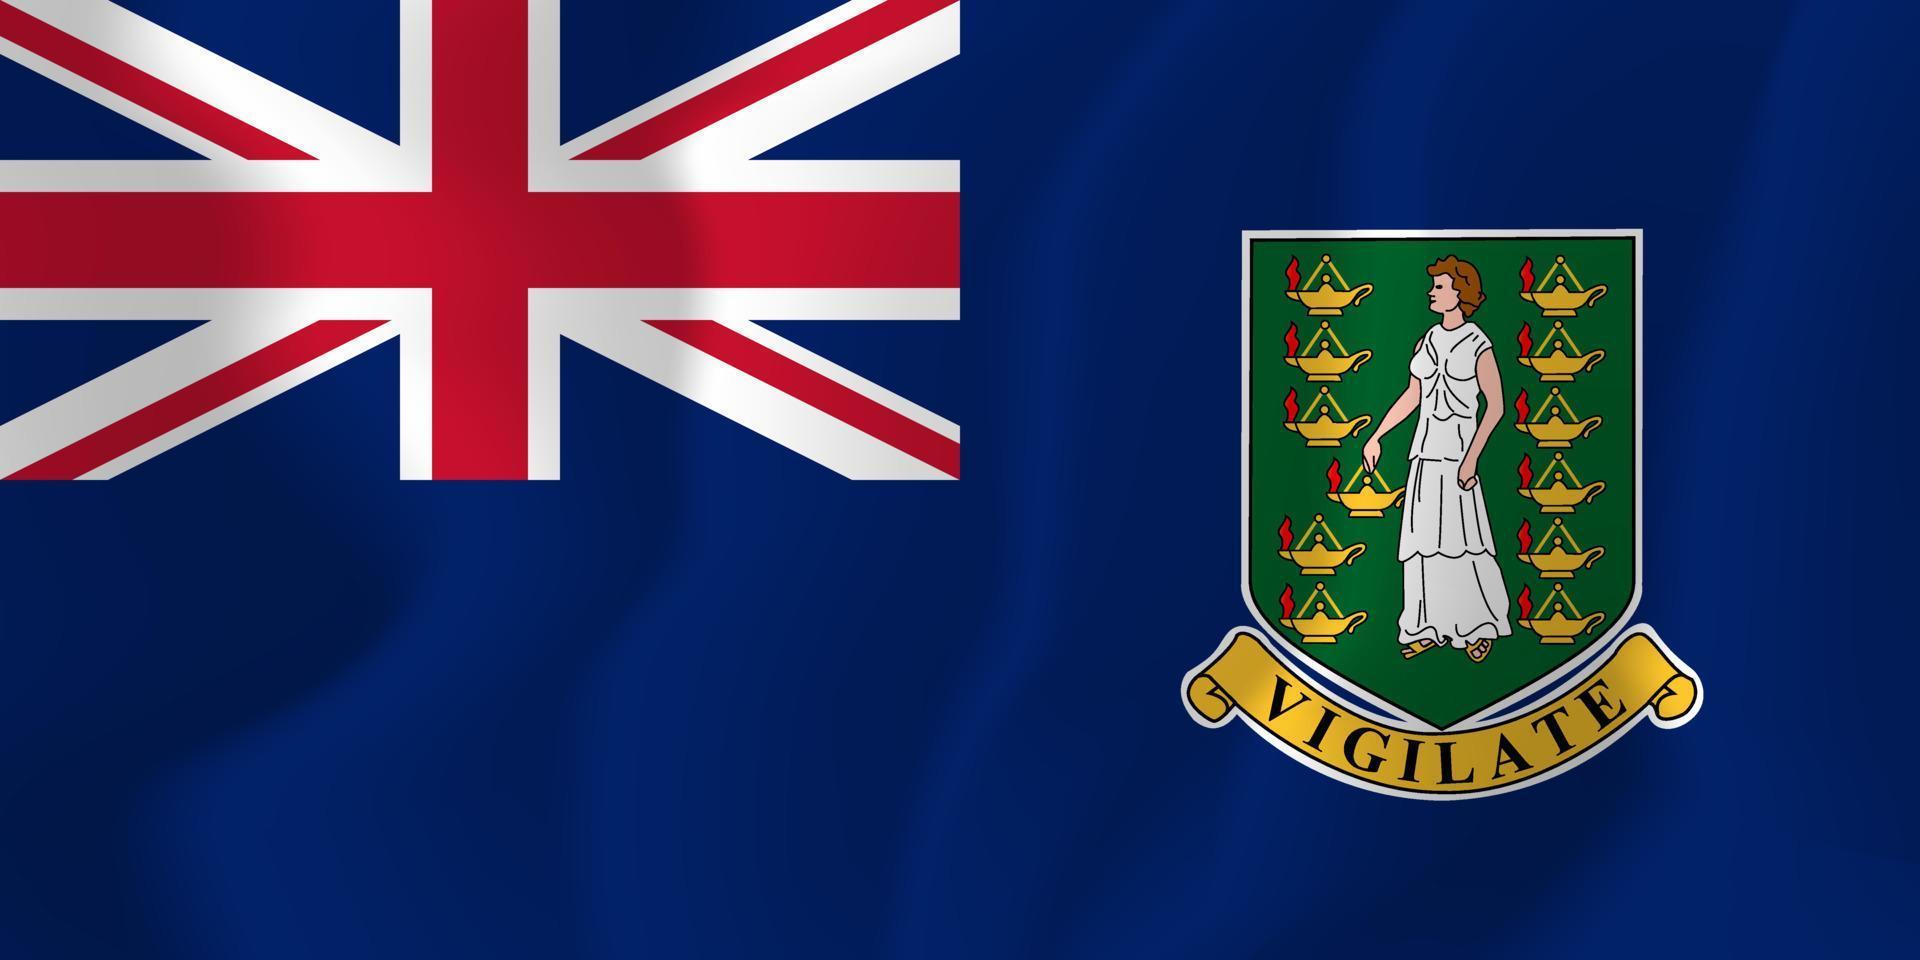 British Virgin Islands National Flag Waving Background Illustration ...